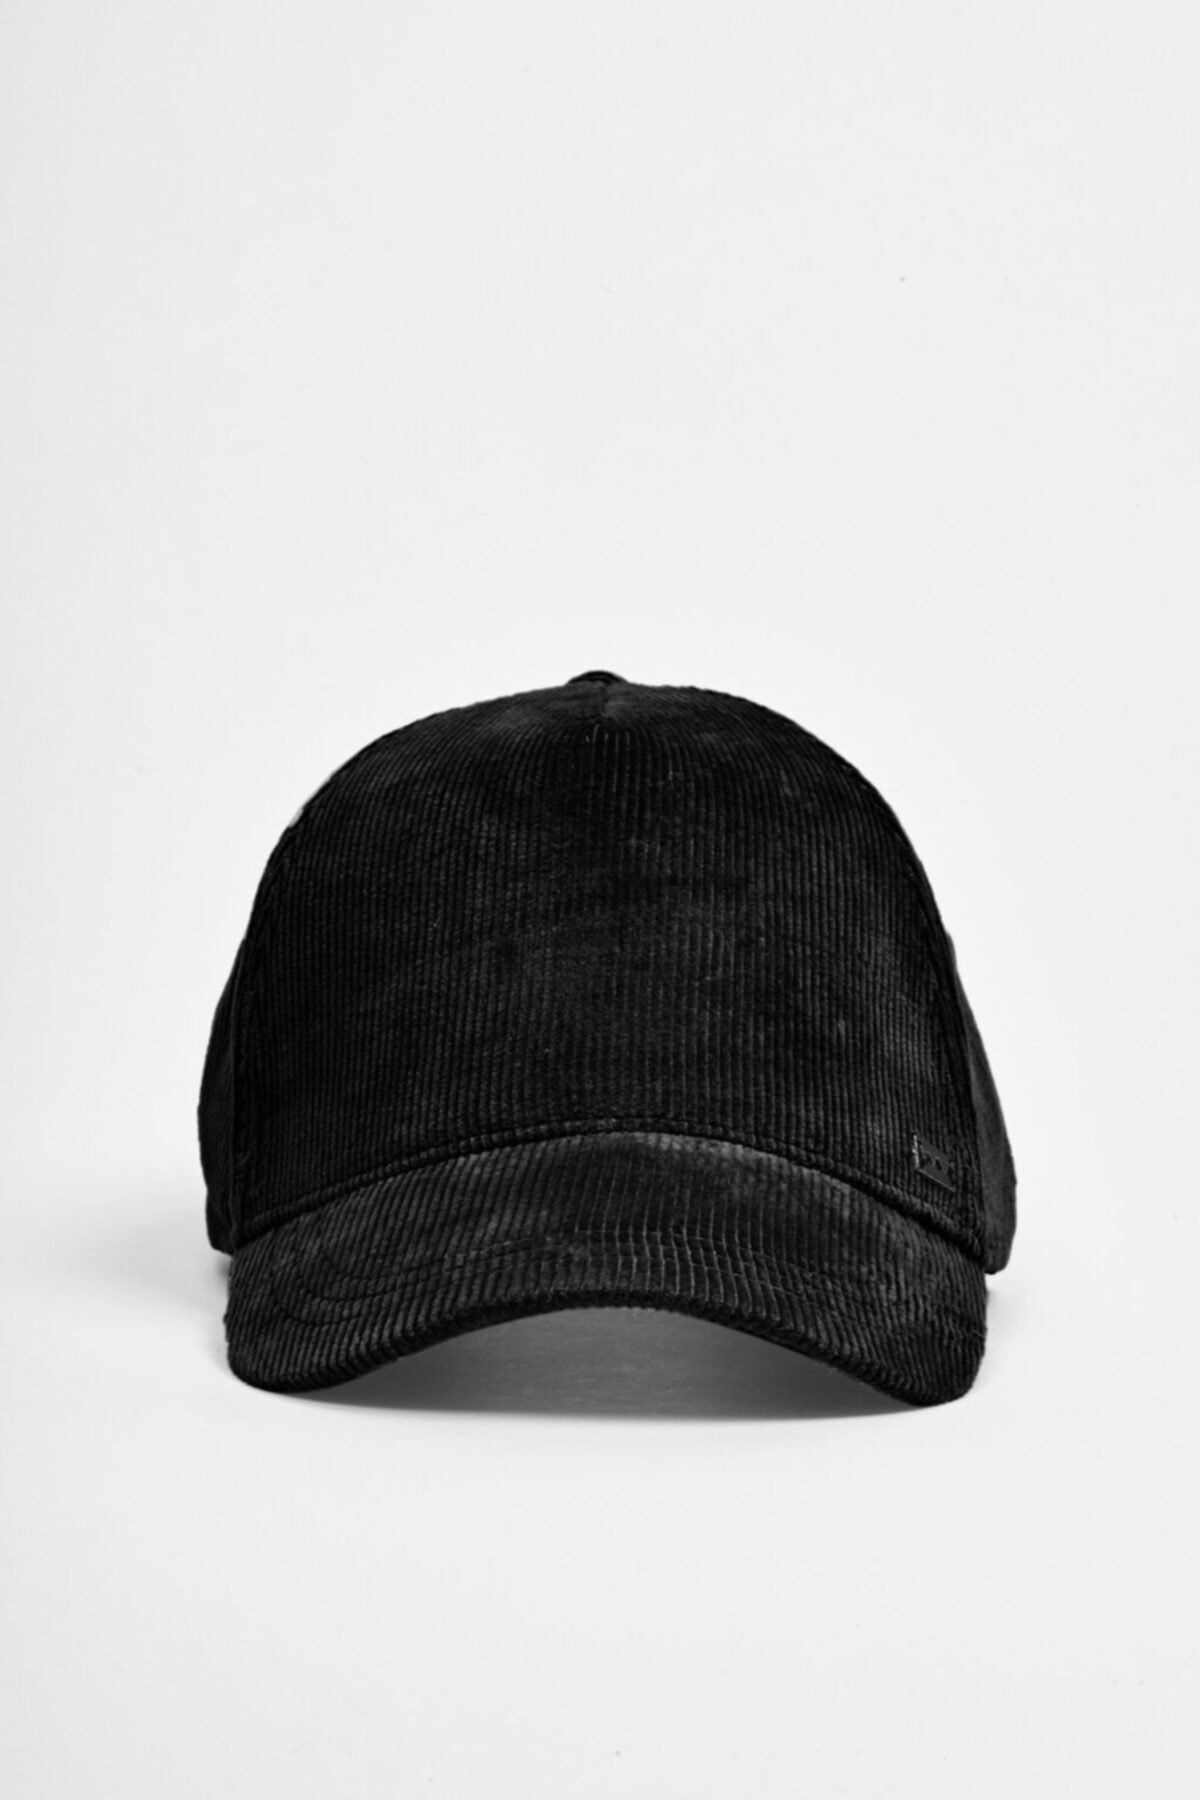 Avva Erkek Siyah Spor Şapkası A02y9215